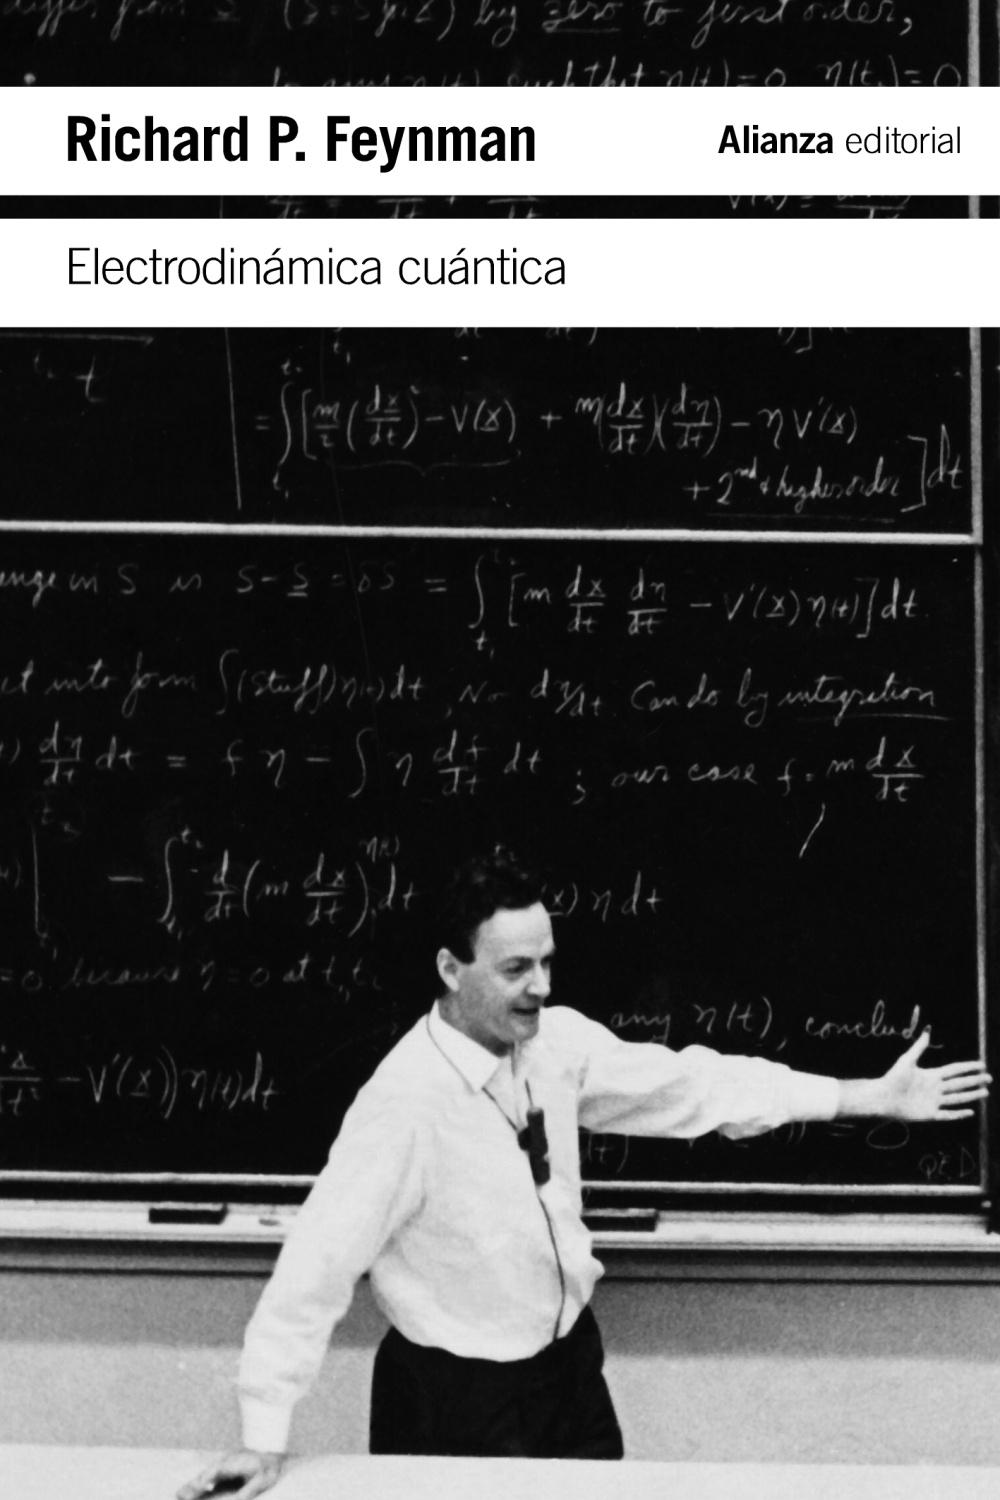 Electrodinámica cuántica "La extraña teoría de la luz y la materia"